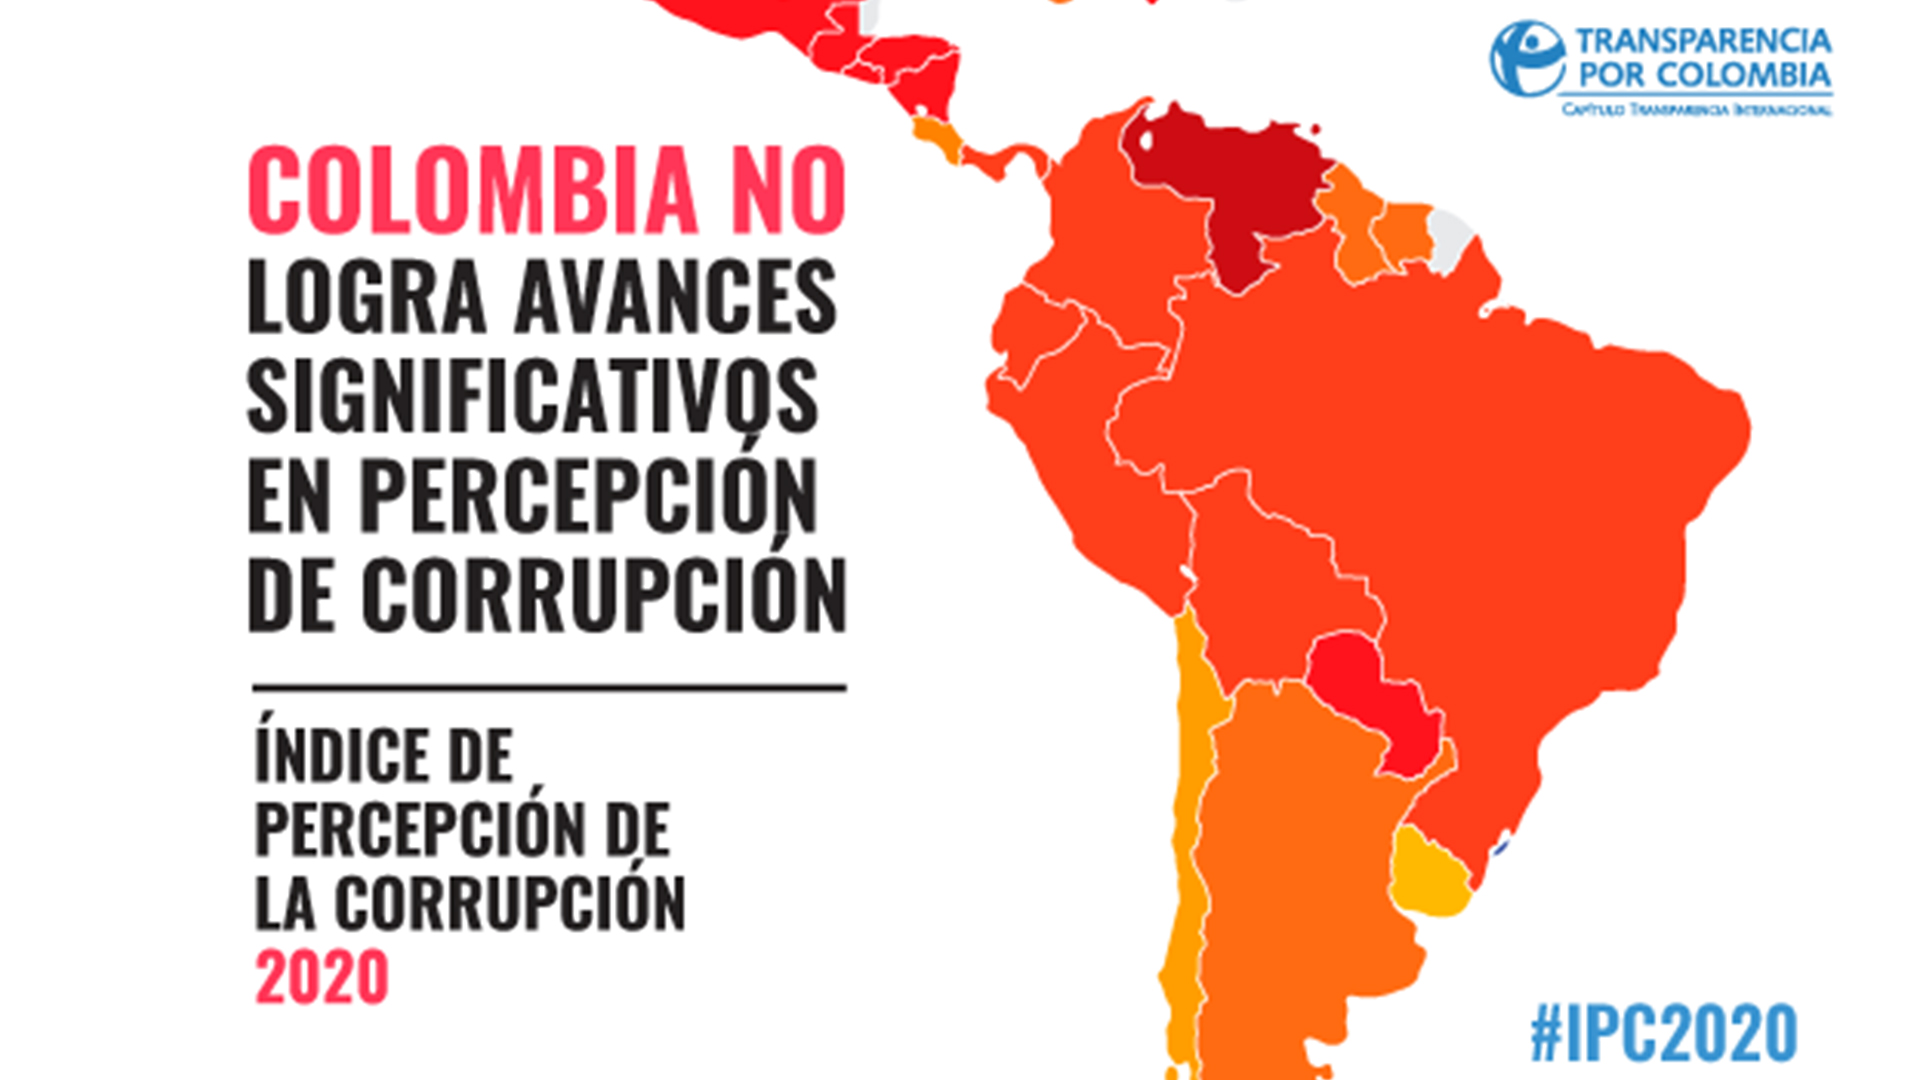 colombia-no-logra-avances-significativos-en-percepcion-de-corrupcion-destacada-entrada.jpg